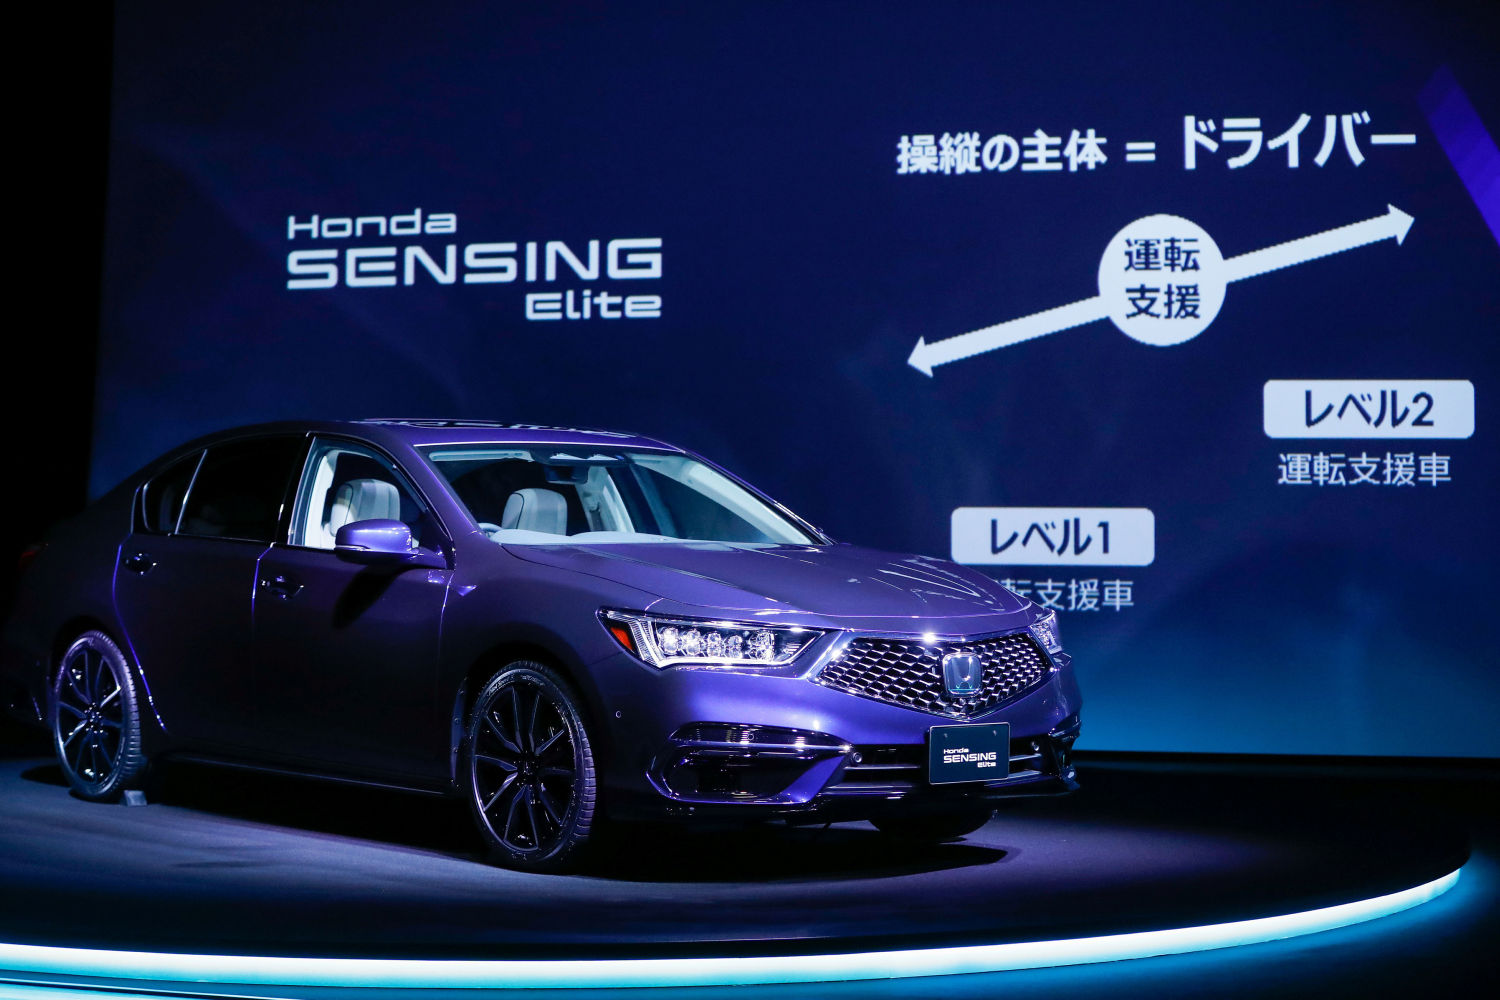 Honda warns of production halts as Japan car exports slump